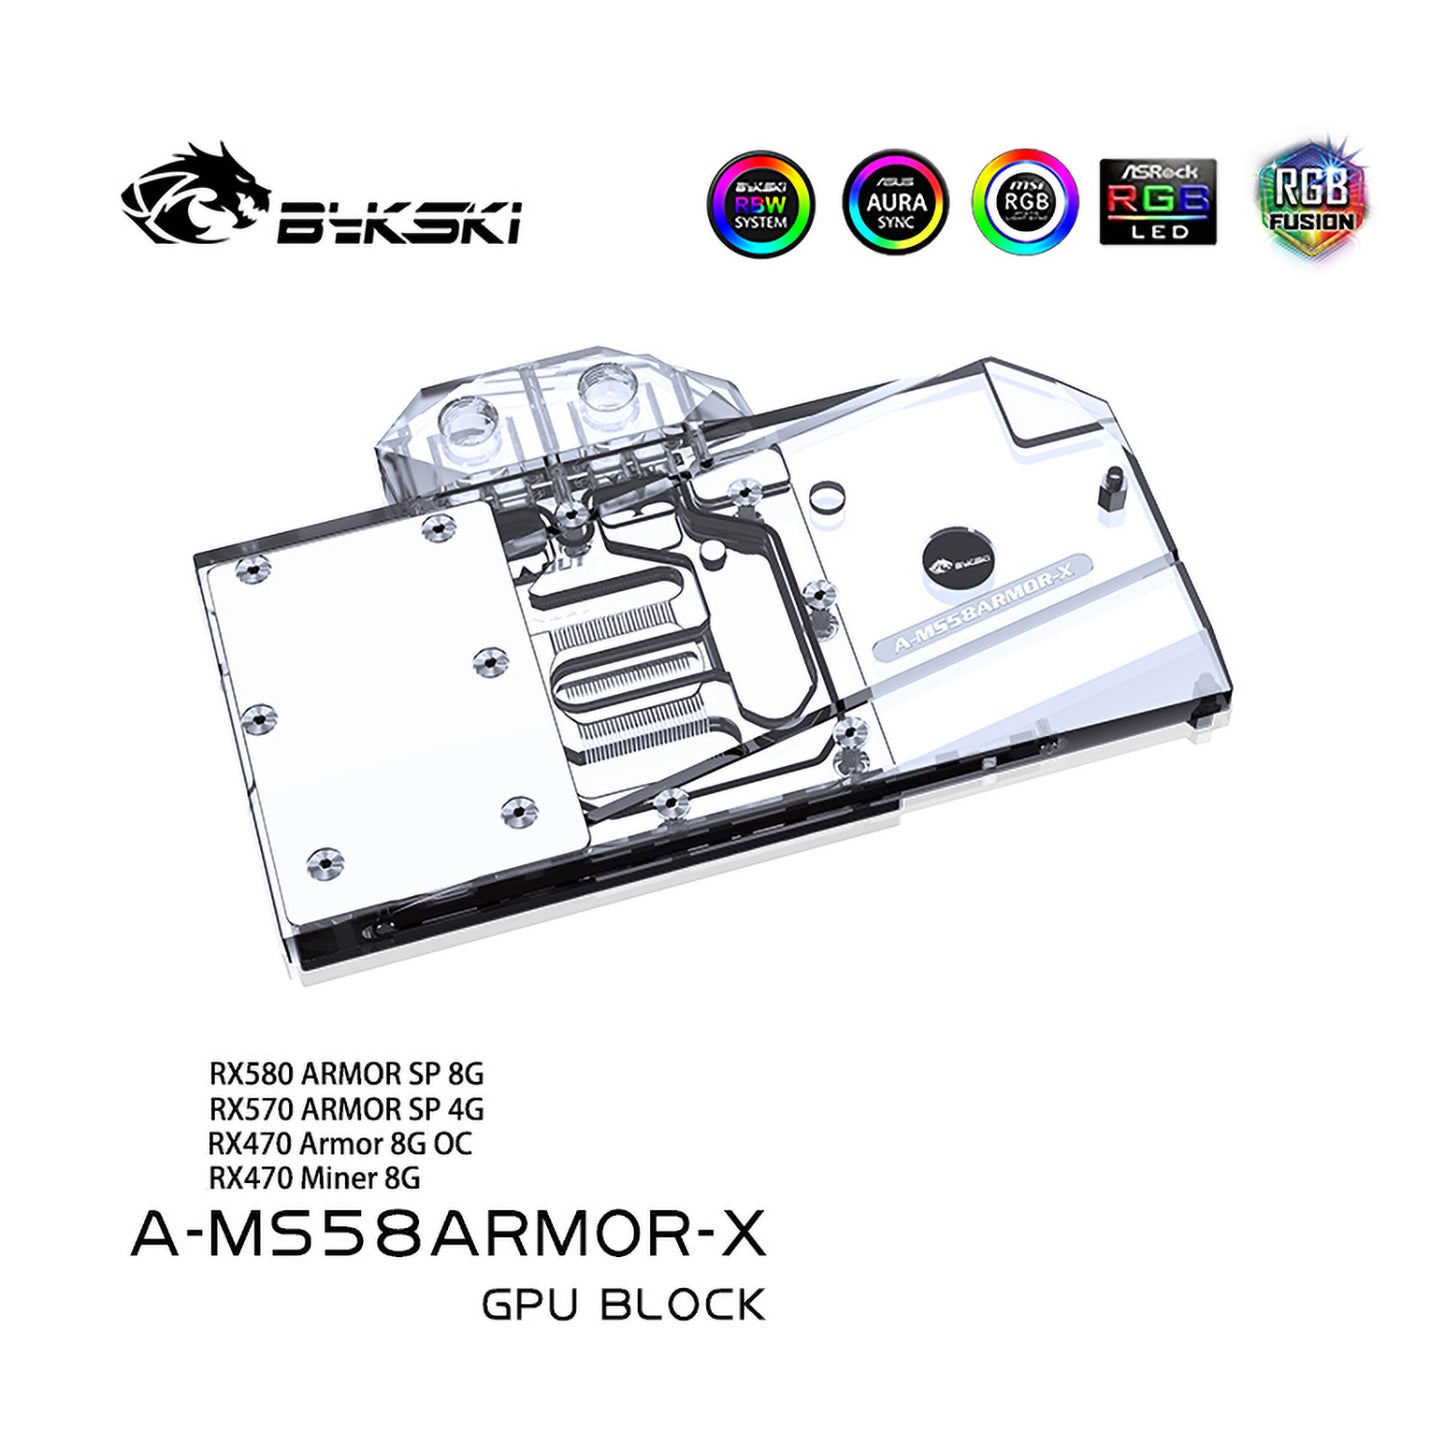 Bykski A-MS58ARMOR-X bloc de refroidissement par eau GPU pour MSI RX 580 armure système de Dissipation thermique des composants informatiques